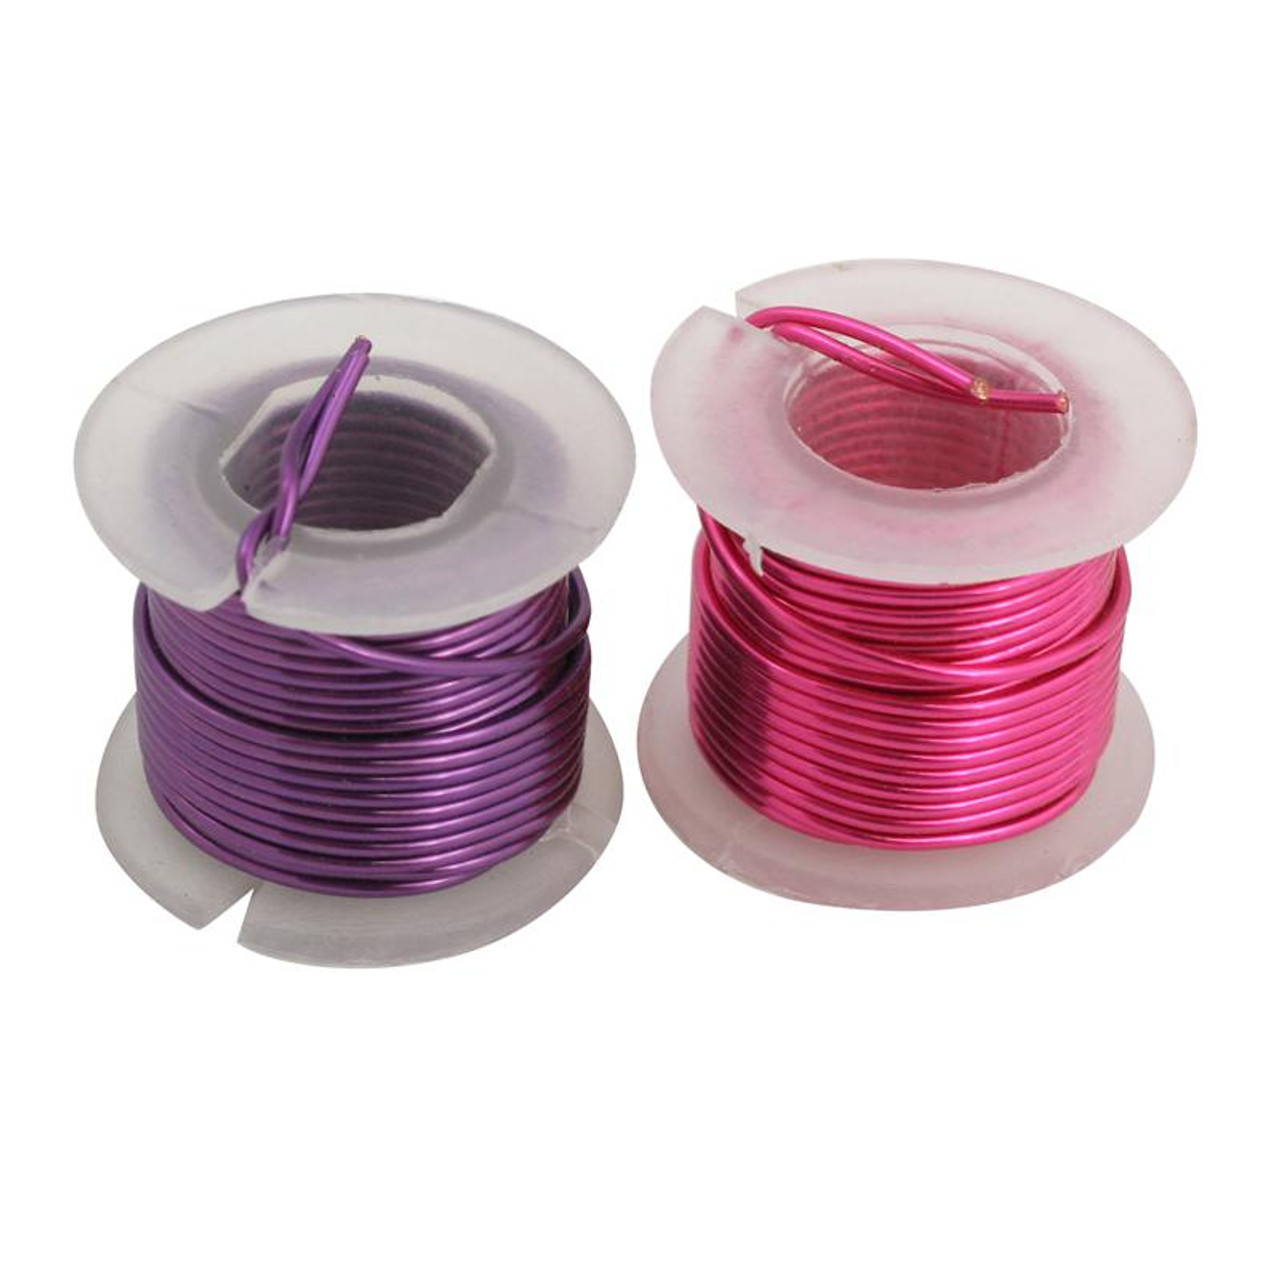 Artistic Wire 20 Gauge Multi Color Craft Wire Pink Black Green | Esslinger